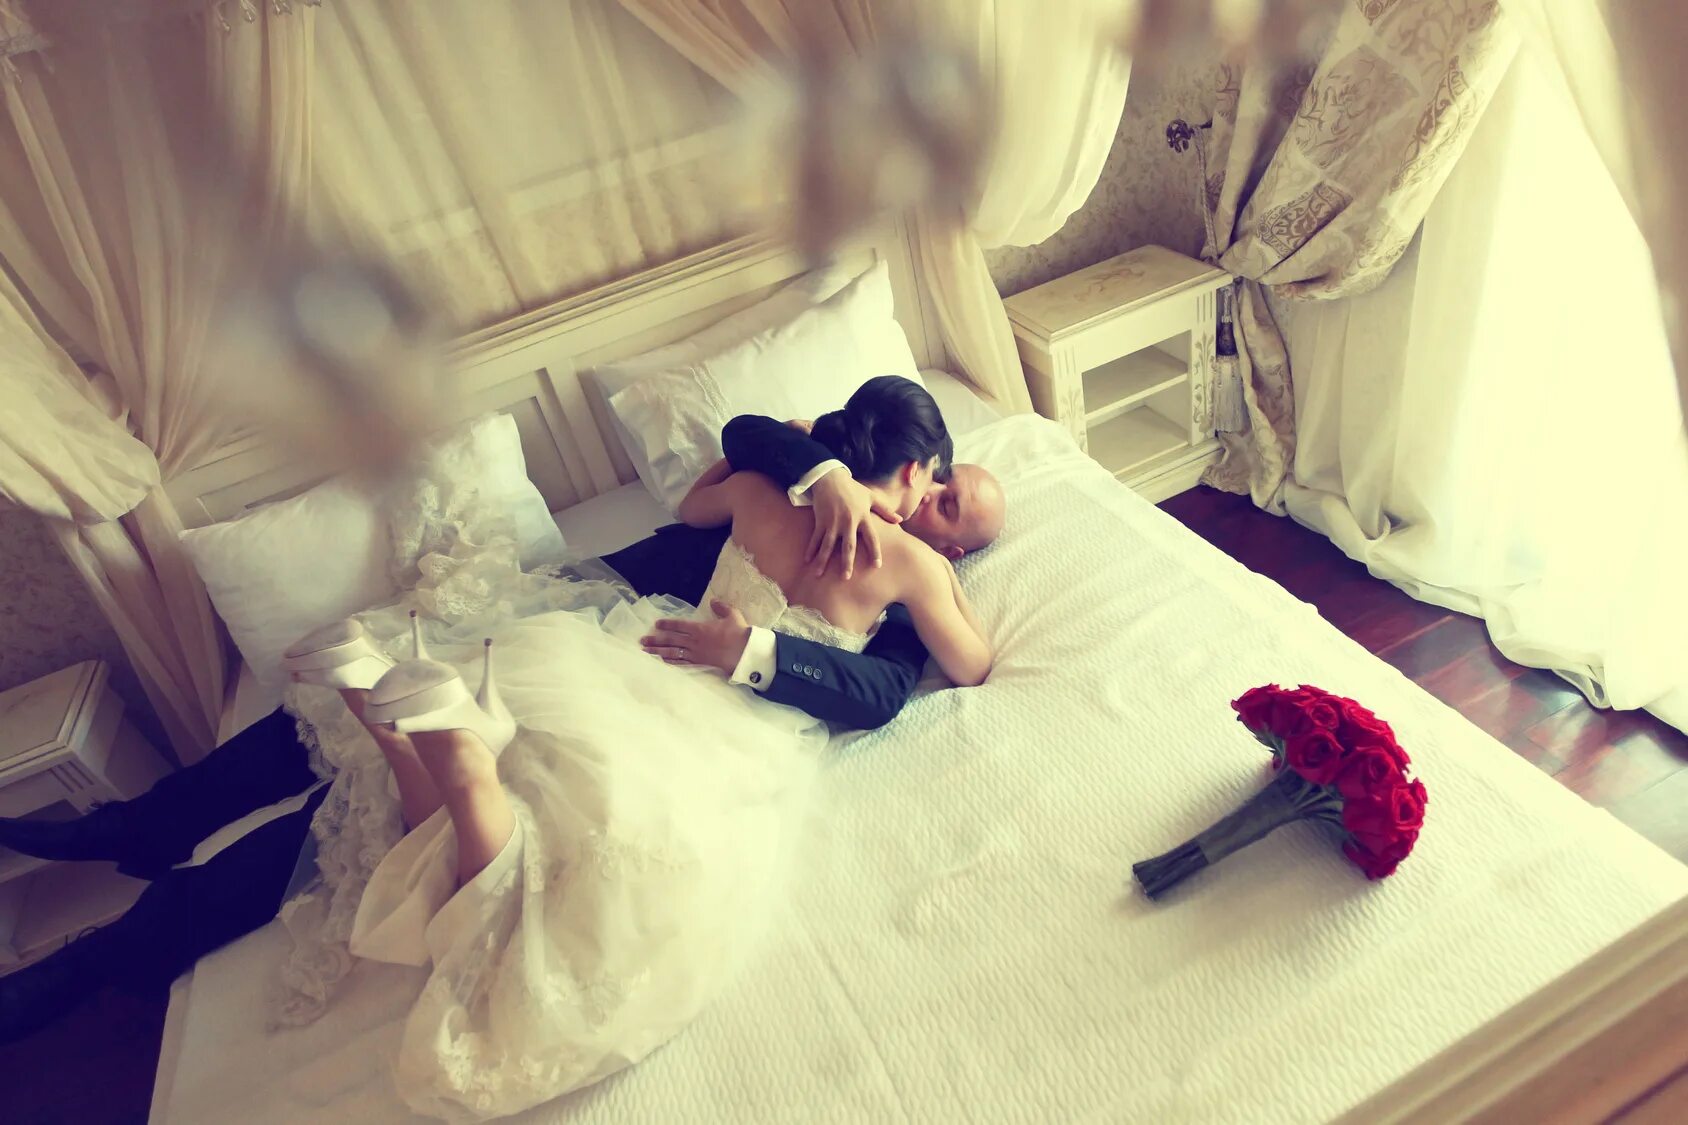 Фанфики брачная ночь. Невесты в постели. Молодожены в постели. Невеста в брачную ночь. Свадебная фотосессия на кровати.